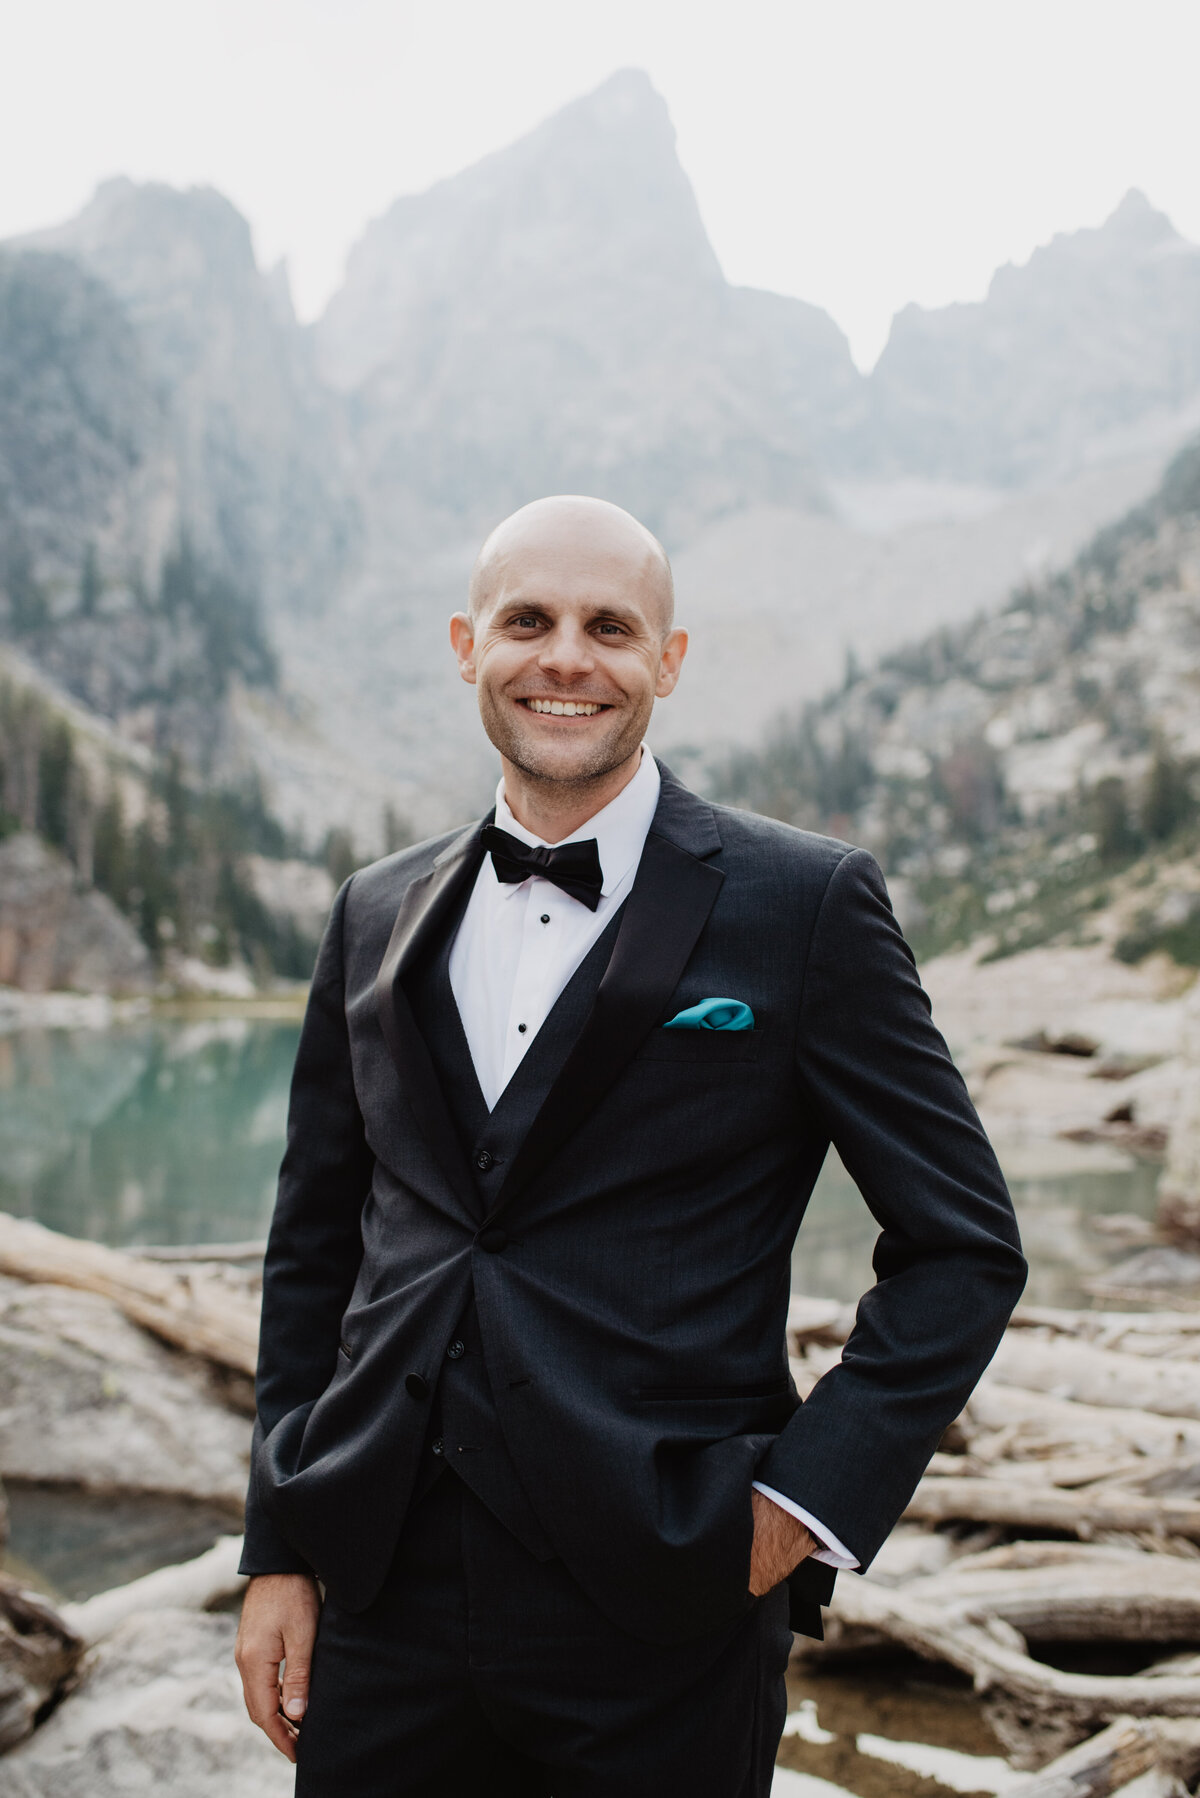 Jackson Hole Photographers capture groom smiling while wearing tuxedo